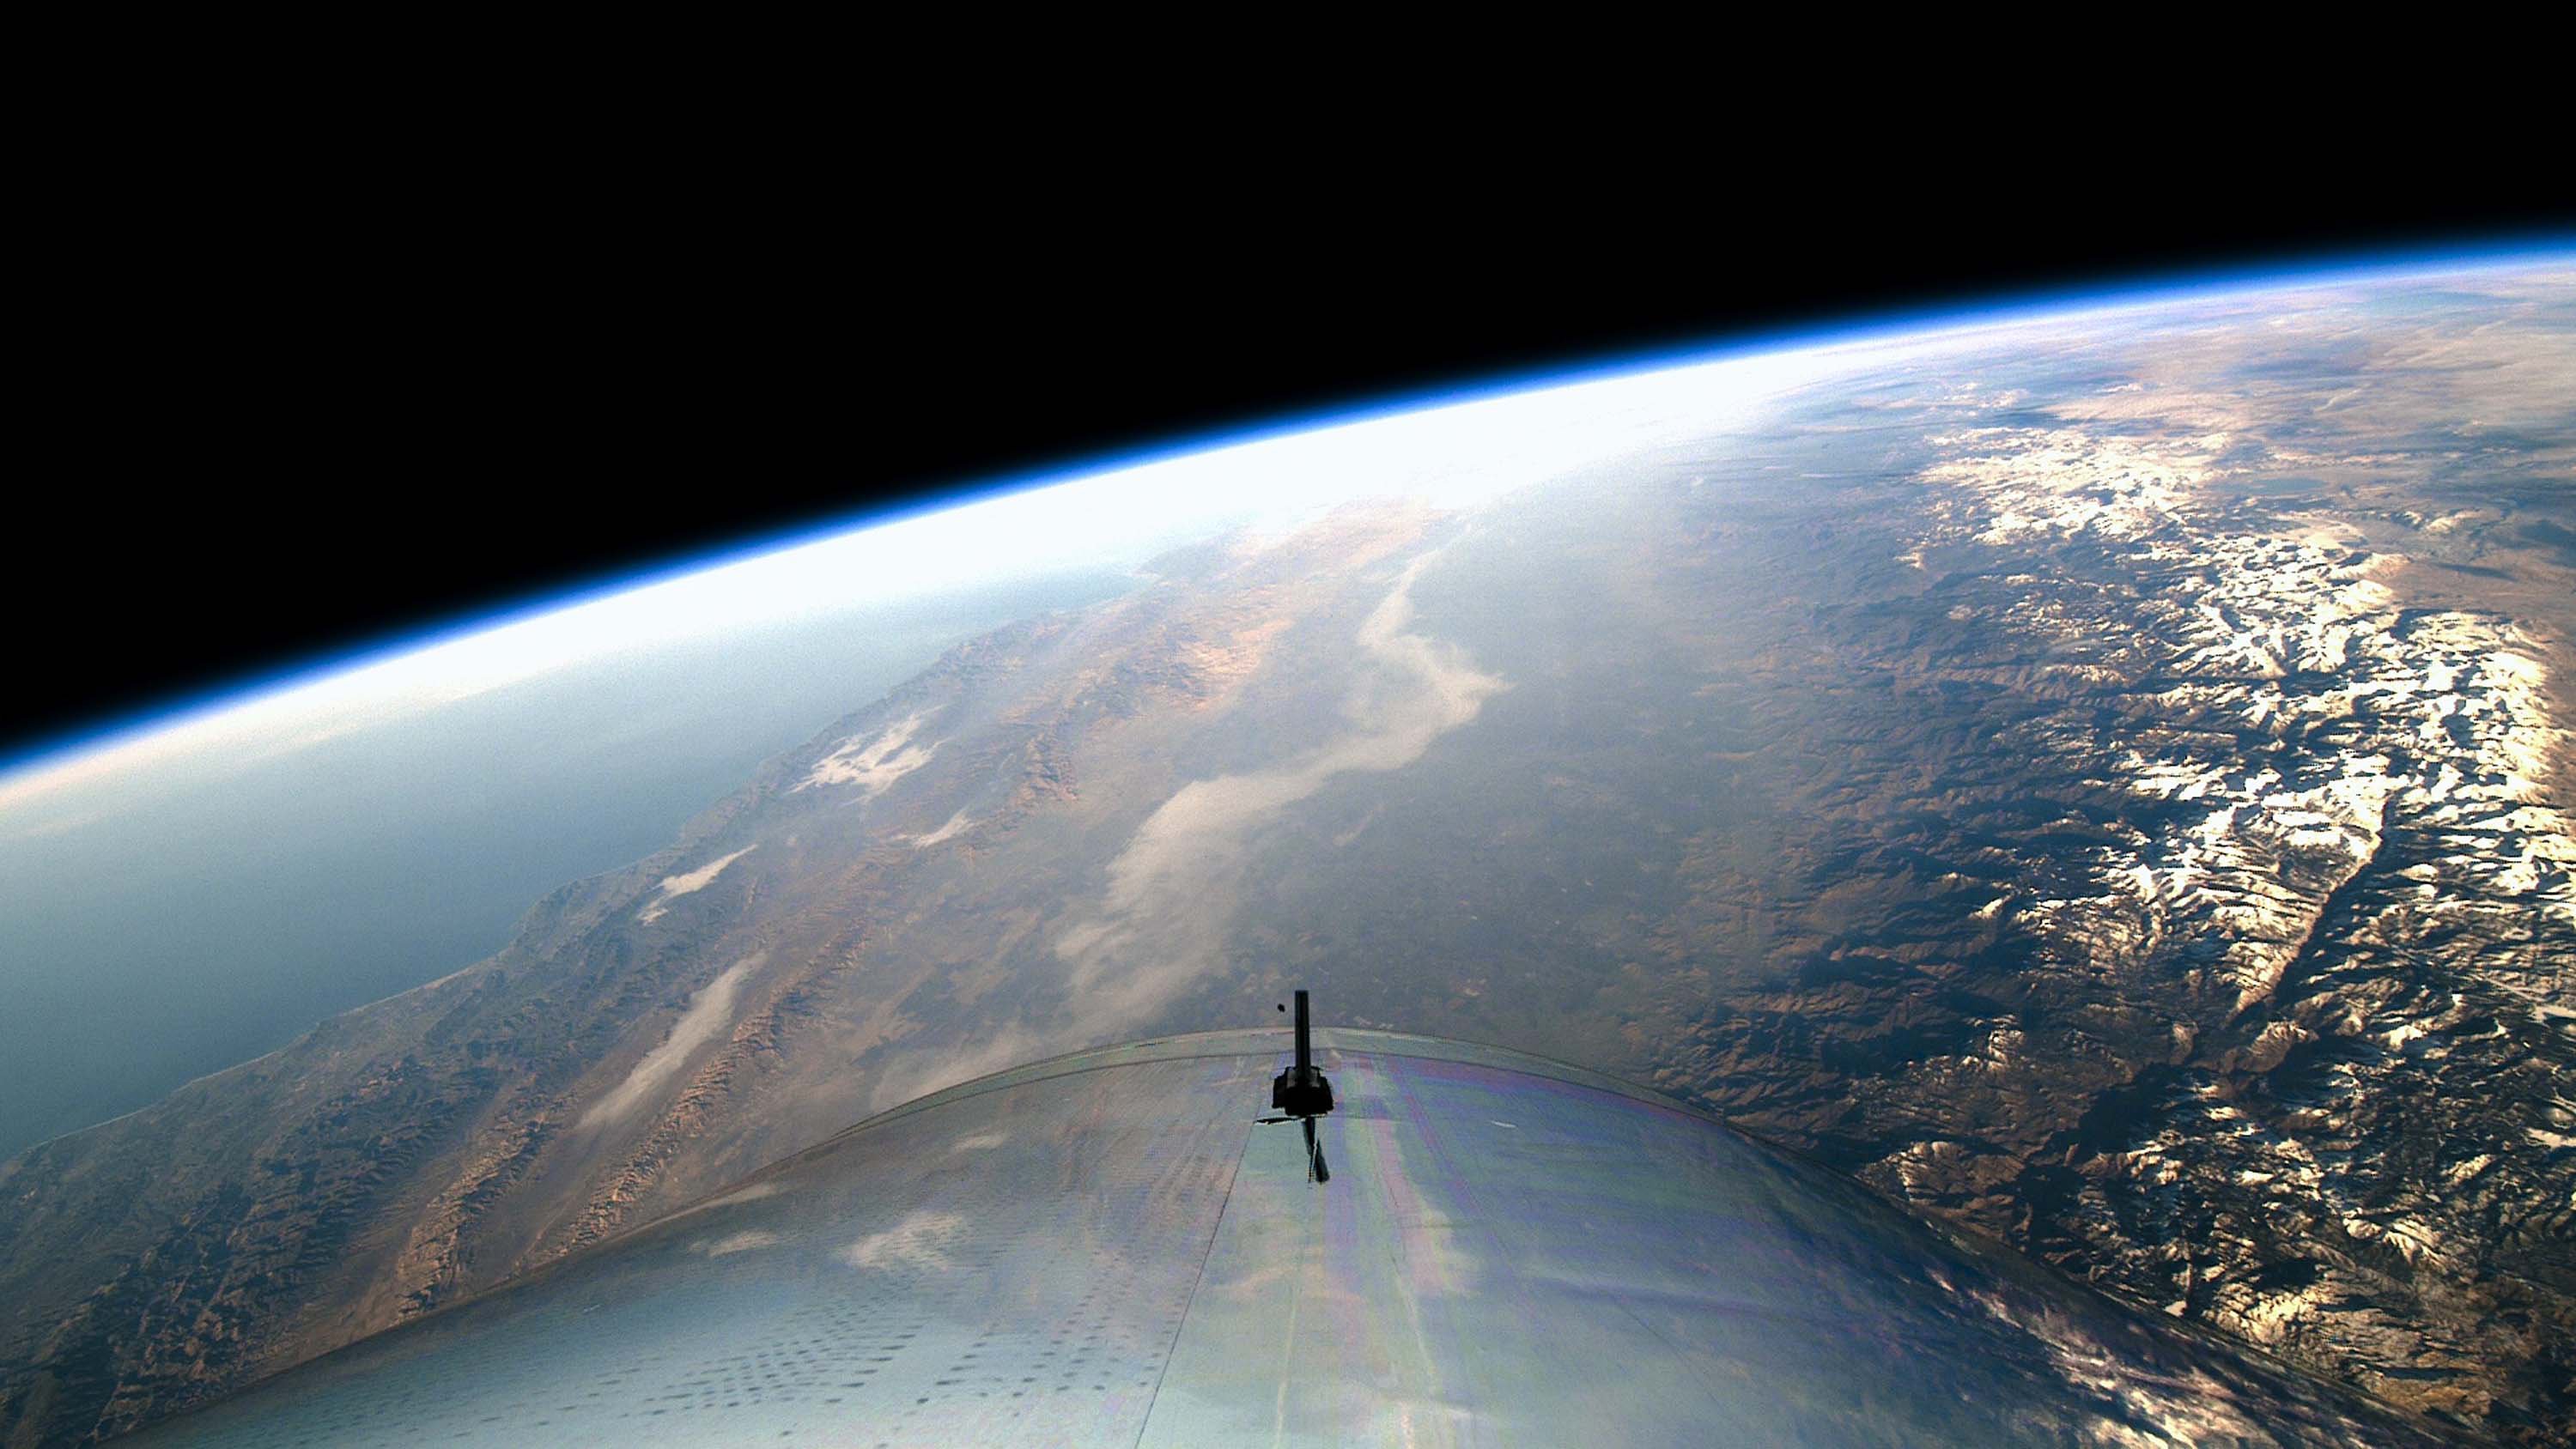 S 20 км. Virgin Galactic фото из космоса. Virgin Galactic высота полета. Virgin Galactic полет. Virgin Galactic вид из космоса.